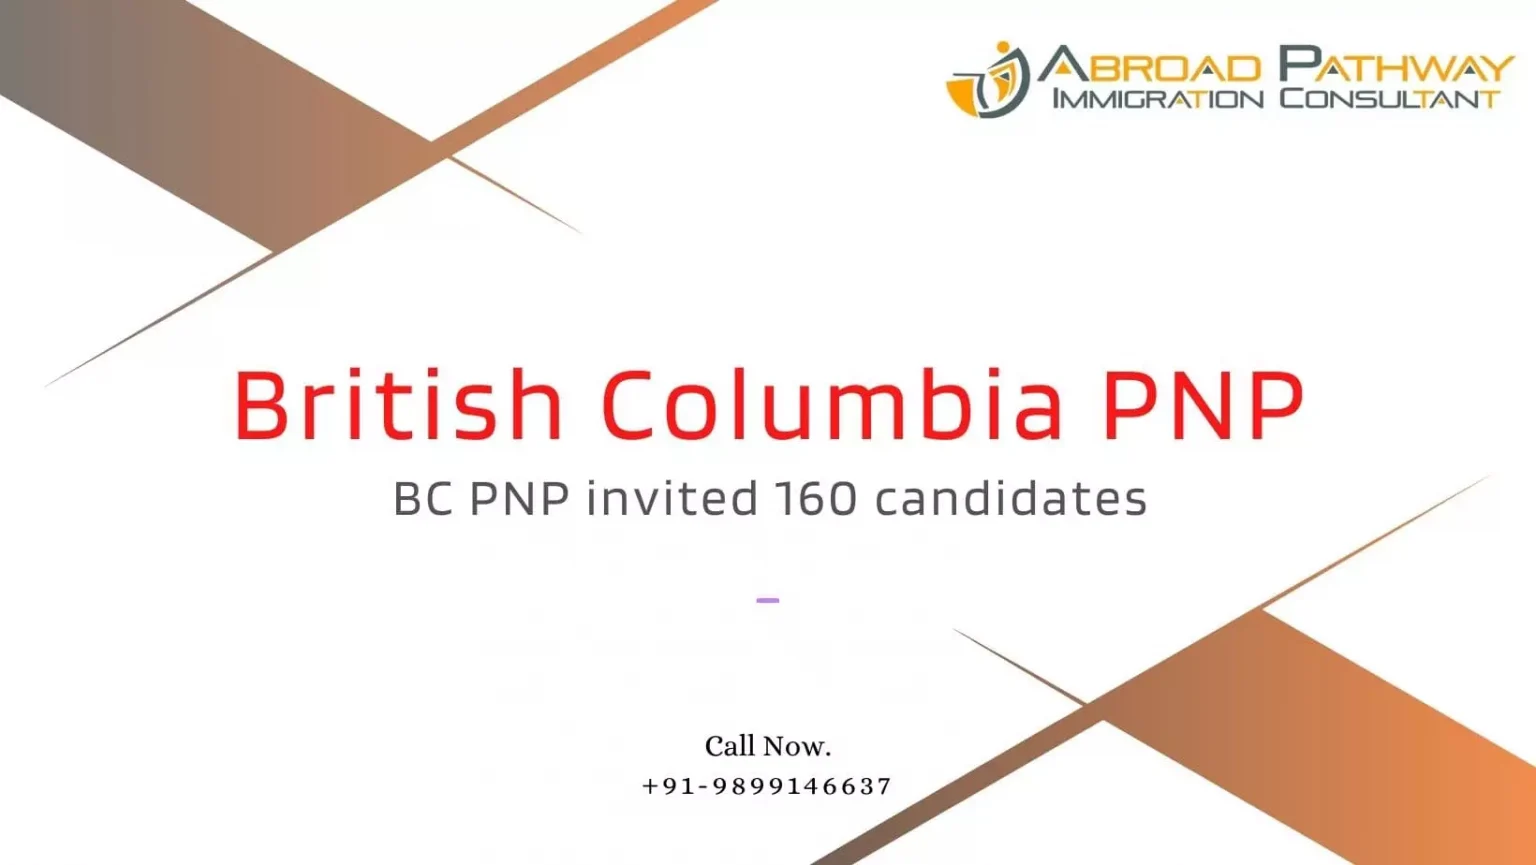 British Columbia PNP draw invites 160 candidates